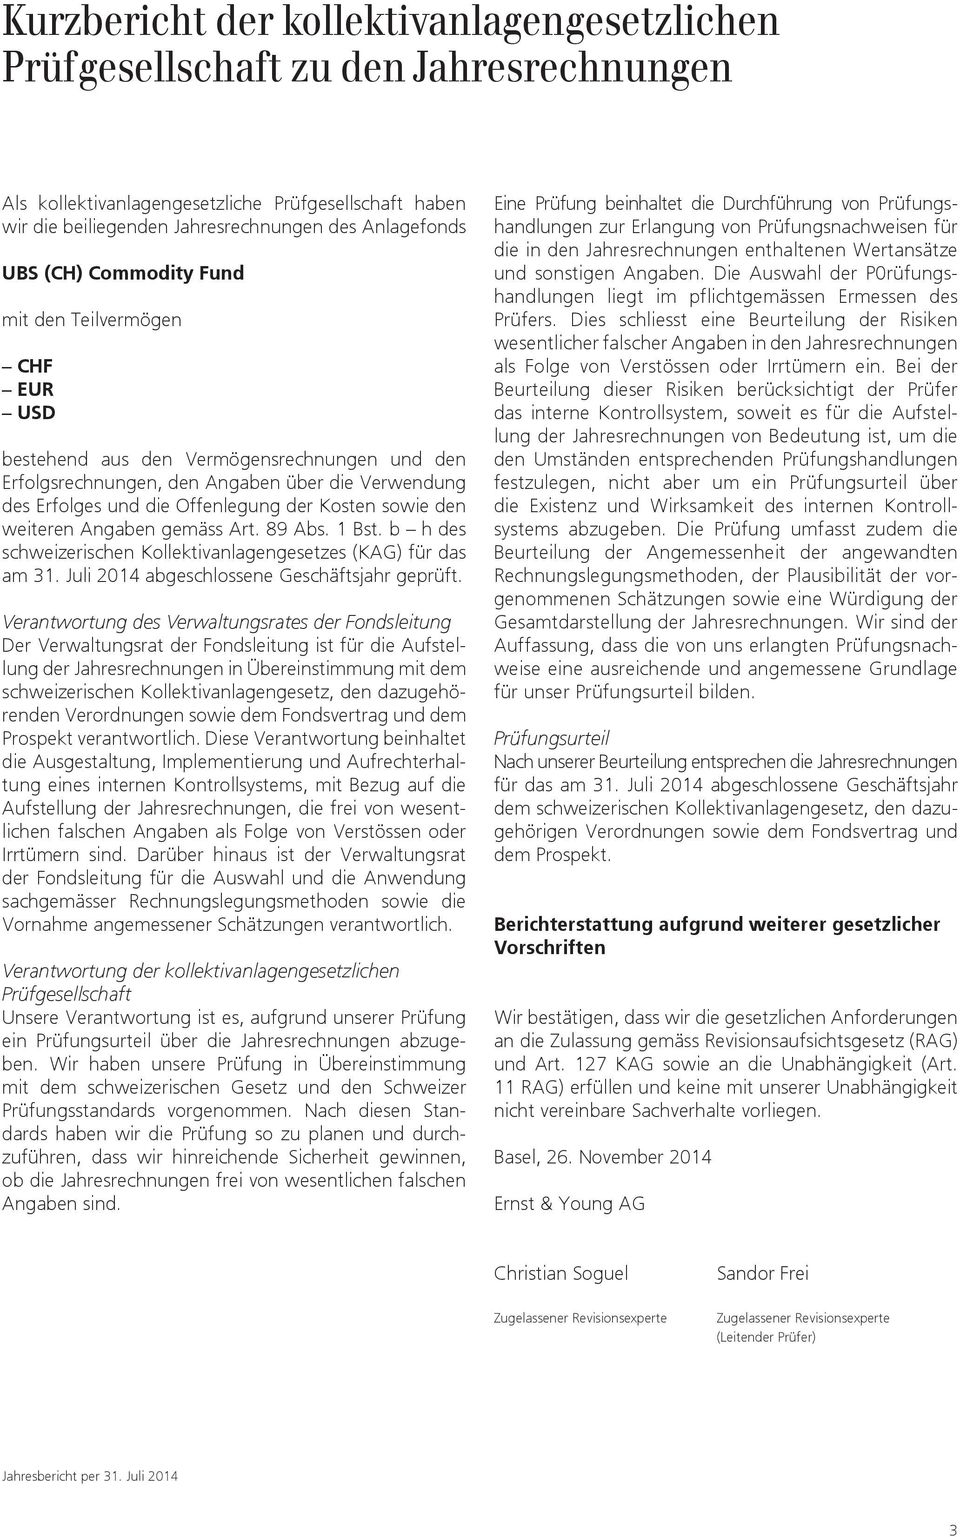 den weiteren Angaben gemäss Art. 89 Abs. 1 Bst. b h des schweizerischen Kollektivanlagengesetzes (KAG) für das am 31. Juli 2014 abgeschlossene Geschäftsjahr geprüft.